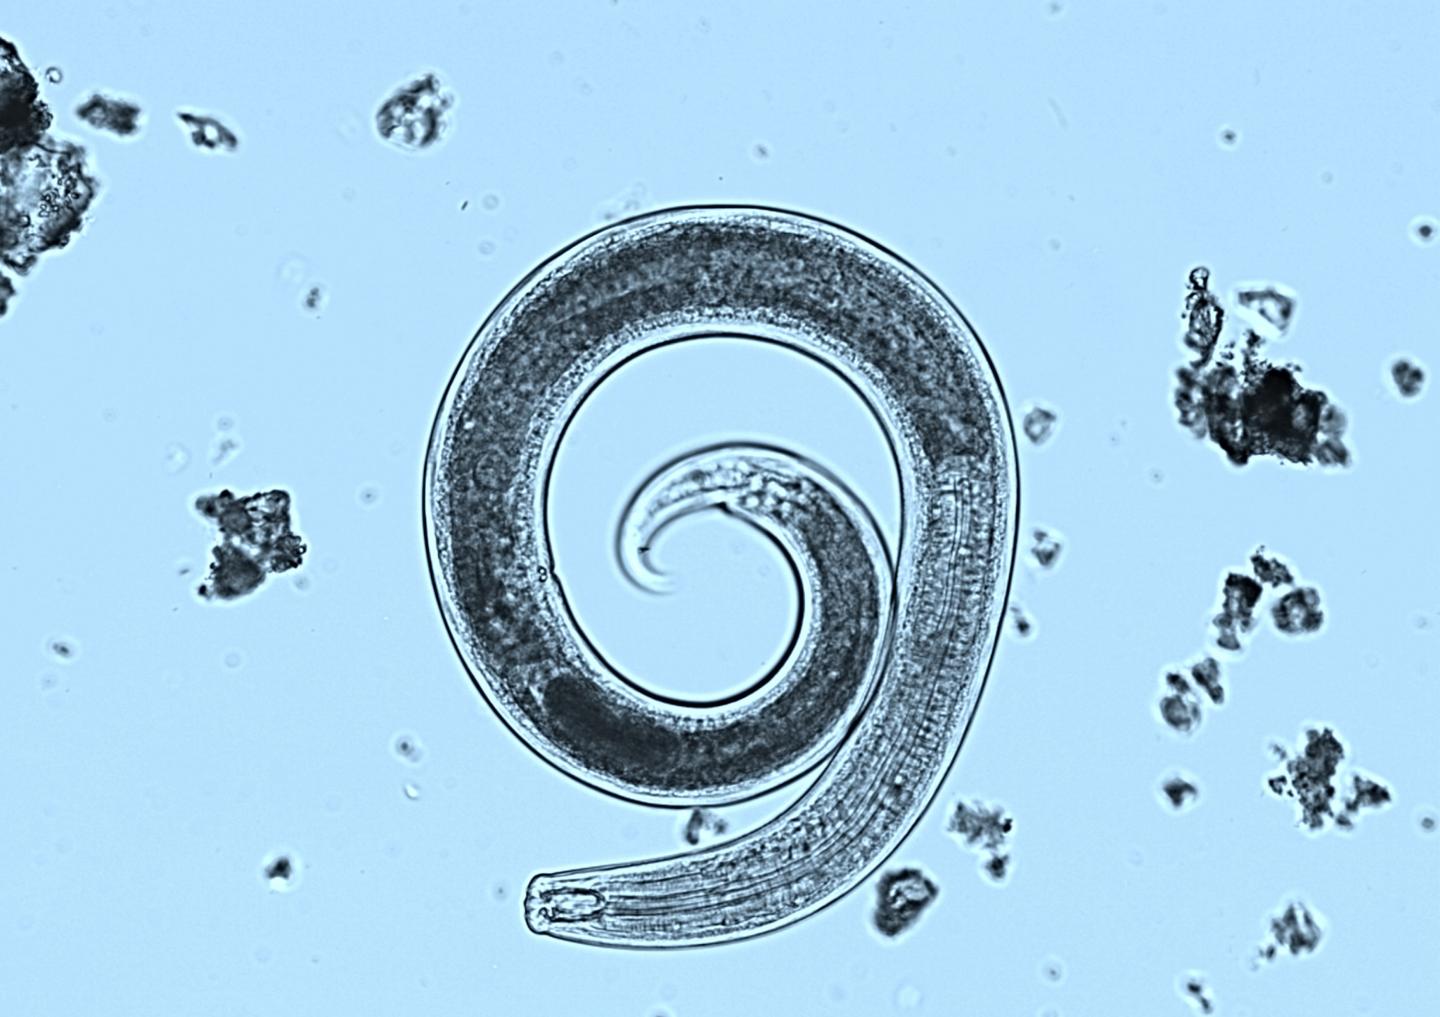 Nematode under microscope.